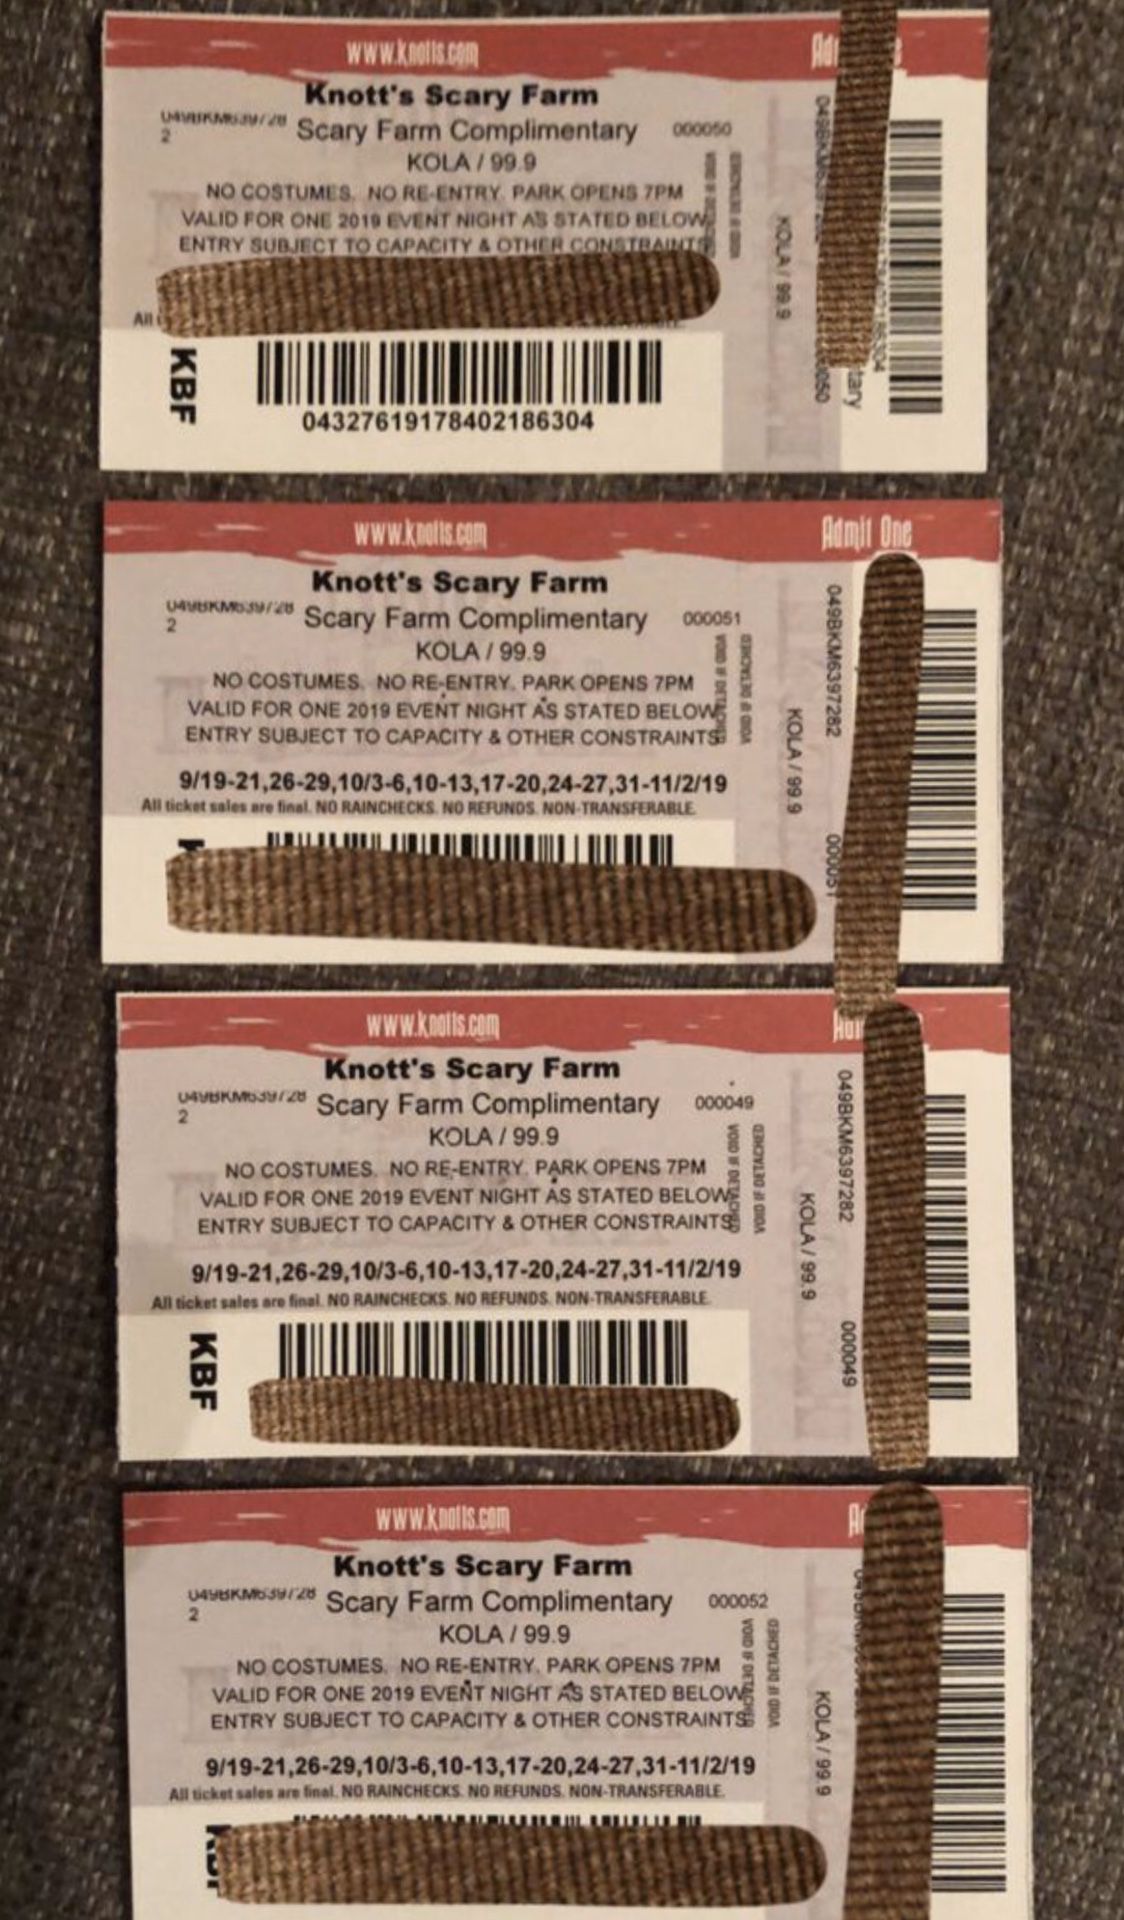 4 knotts scary farm tickets